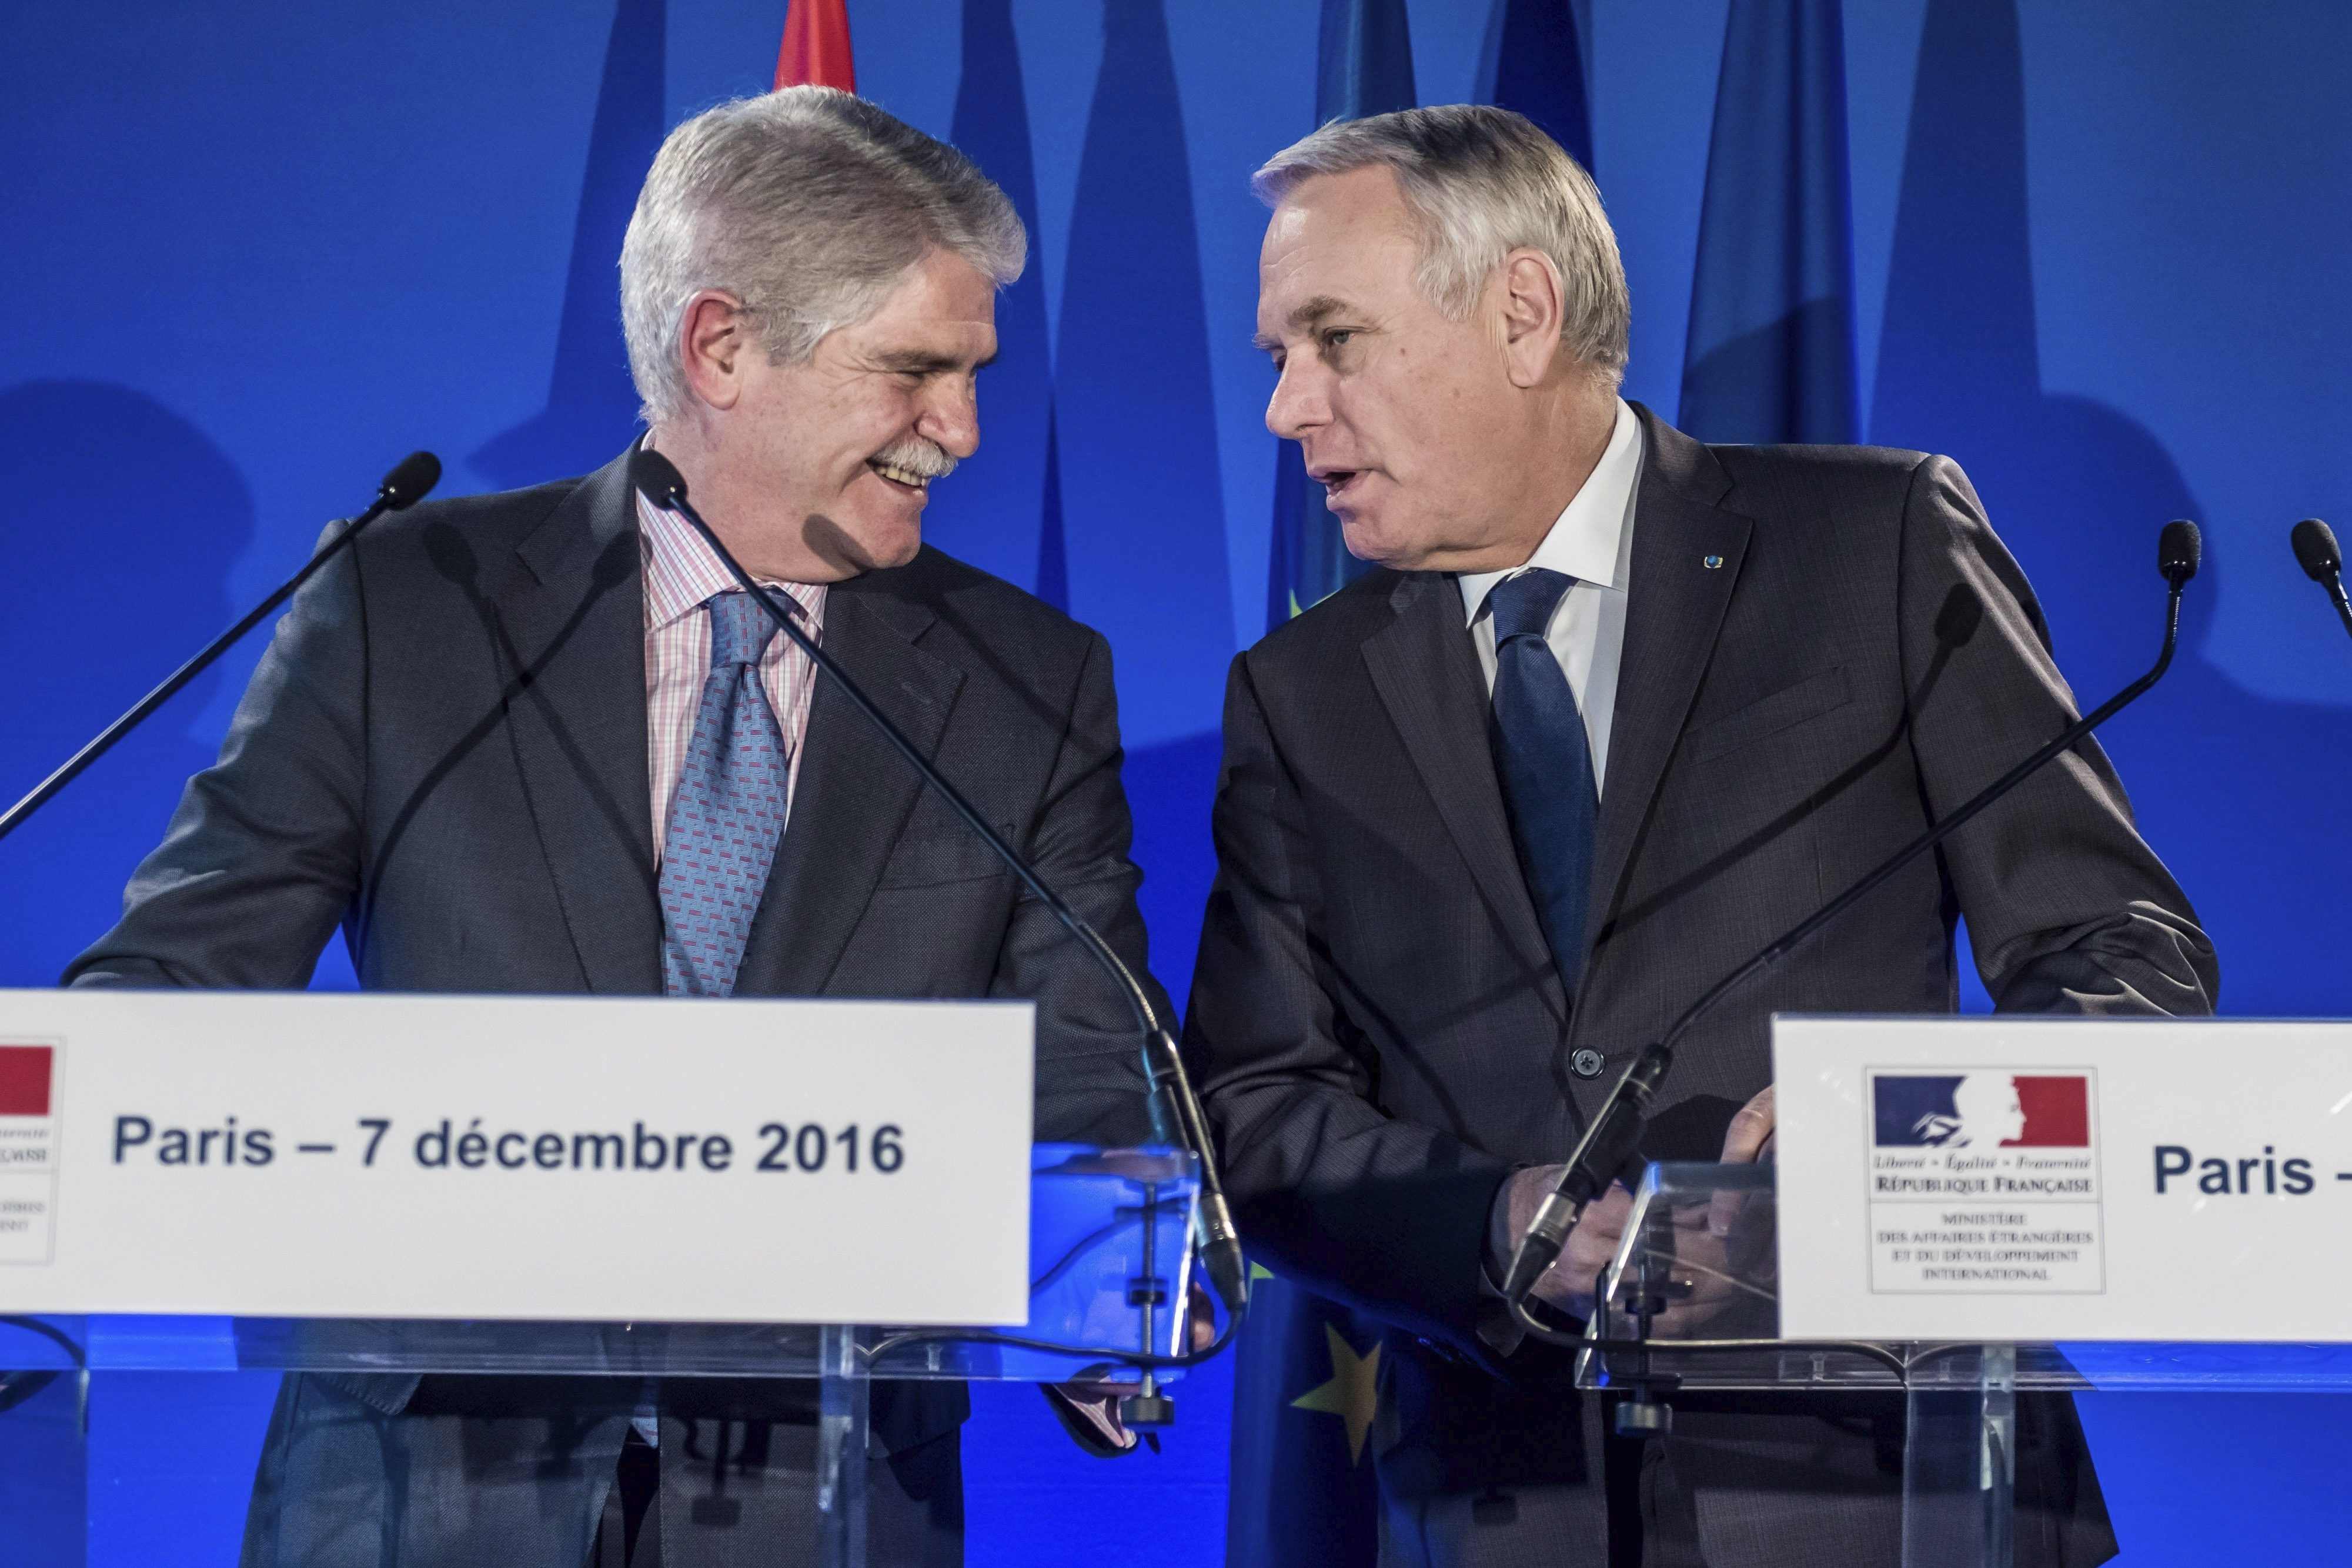 La reivindicación independentista se cuela en una cumbre hispano-francesa